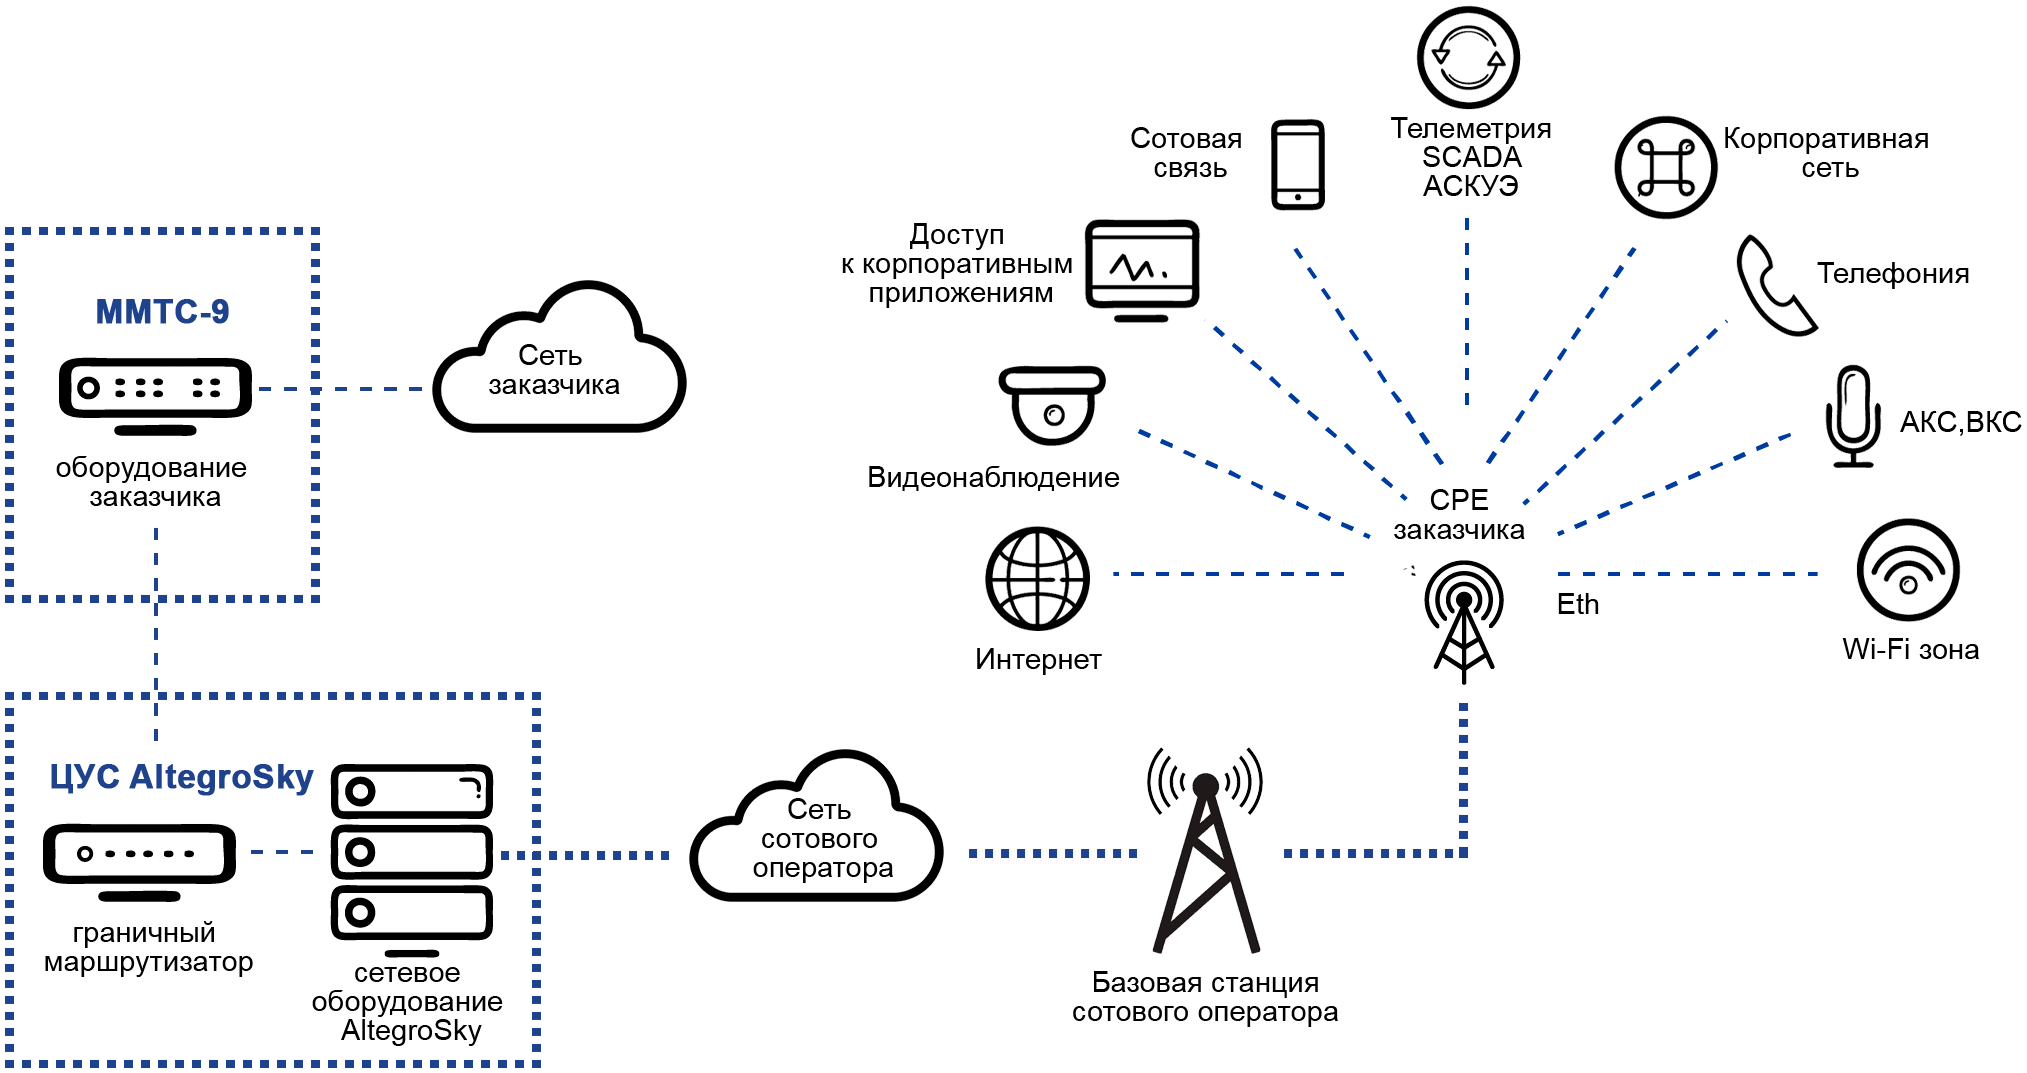 Схема беспроводных каналов связи на основе технологии UMTS/LTE